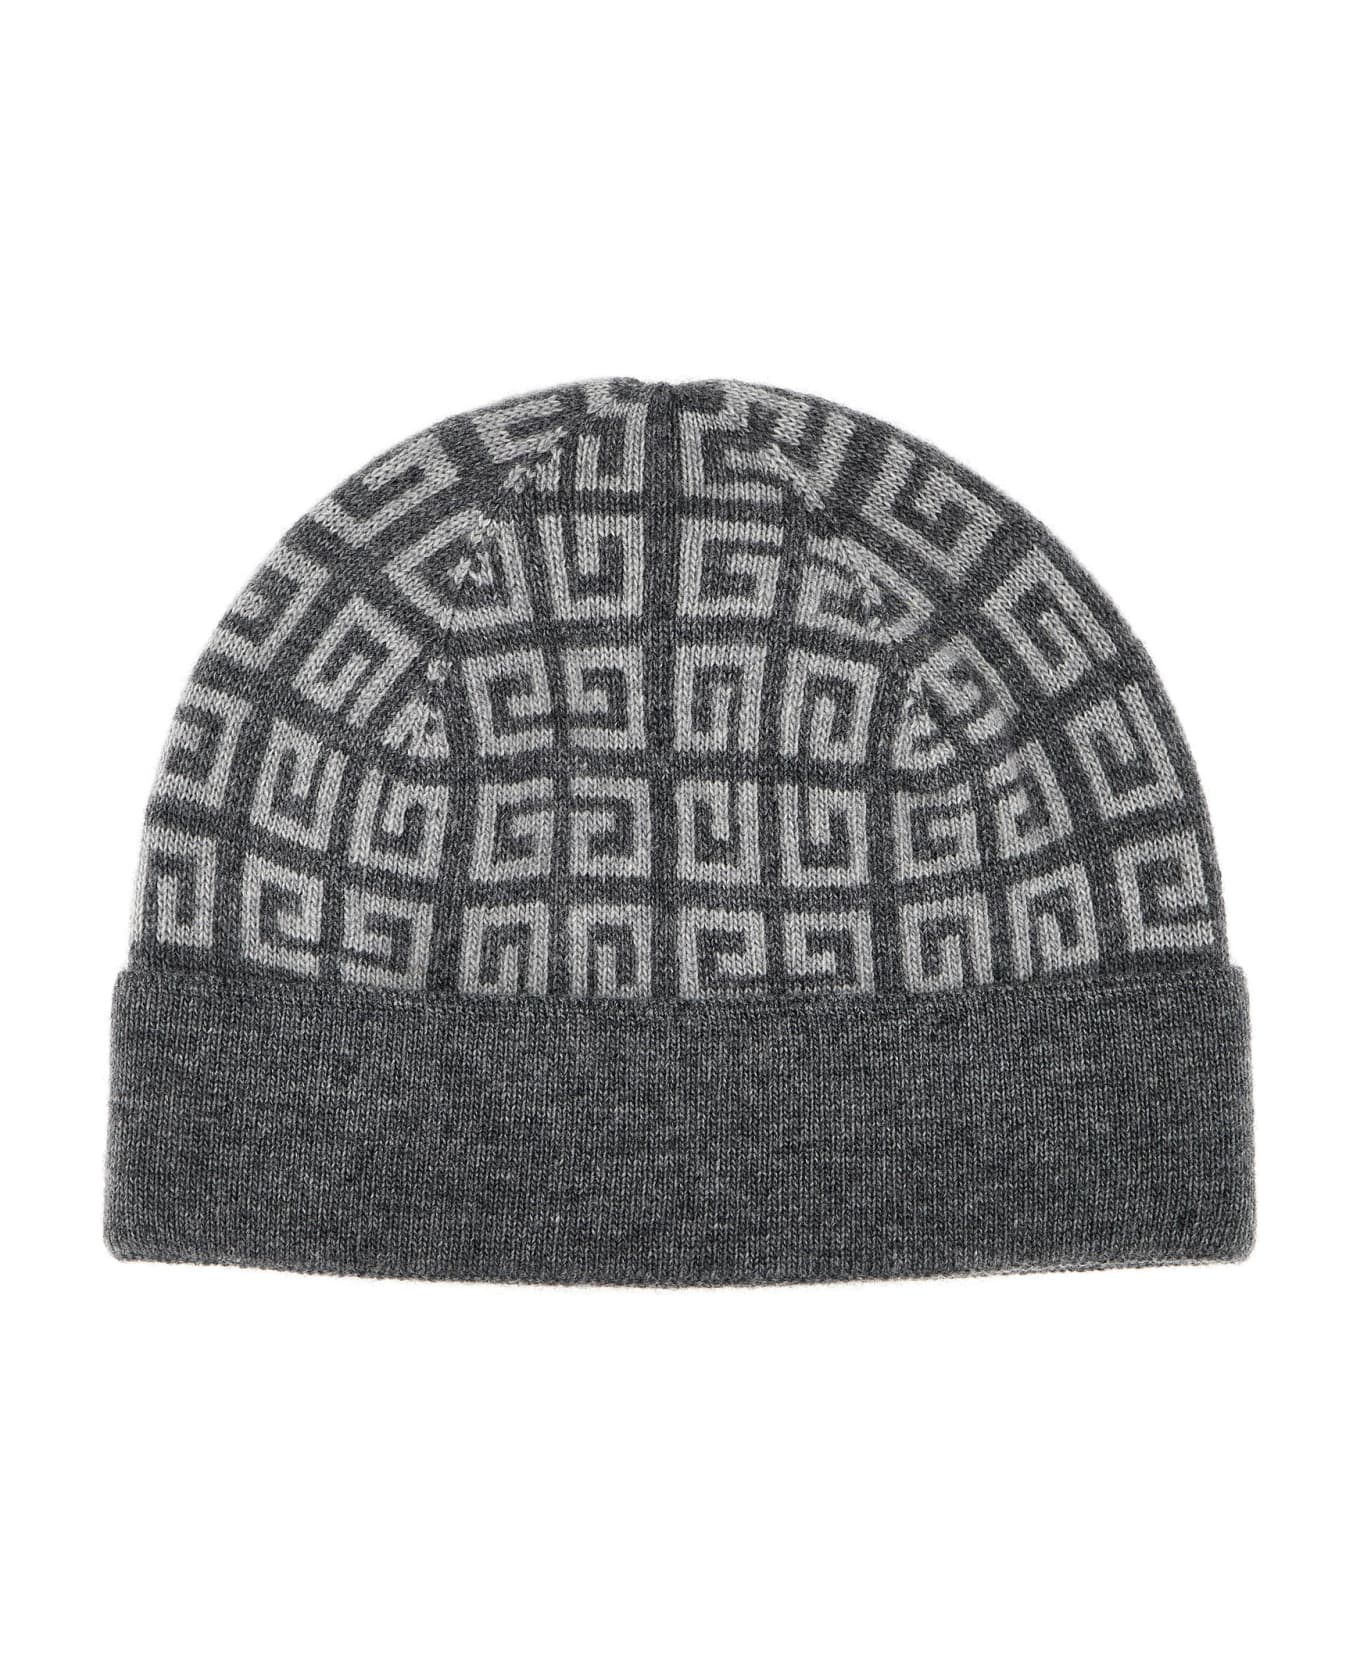 Givenchy Logo Beanie - Gray 帽子